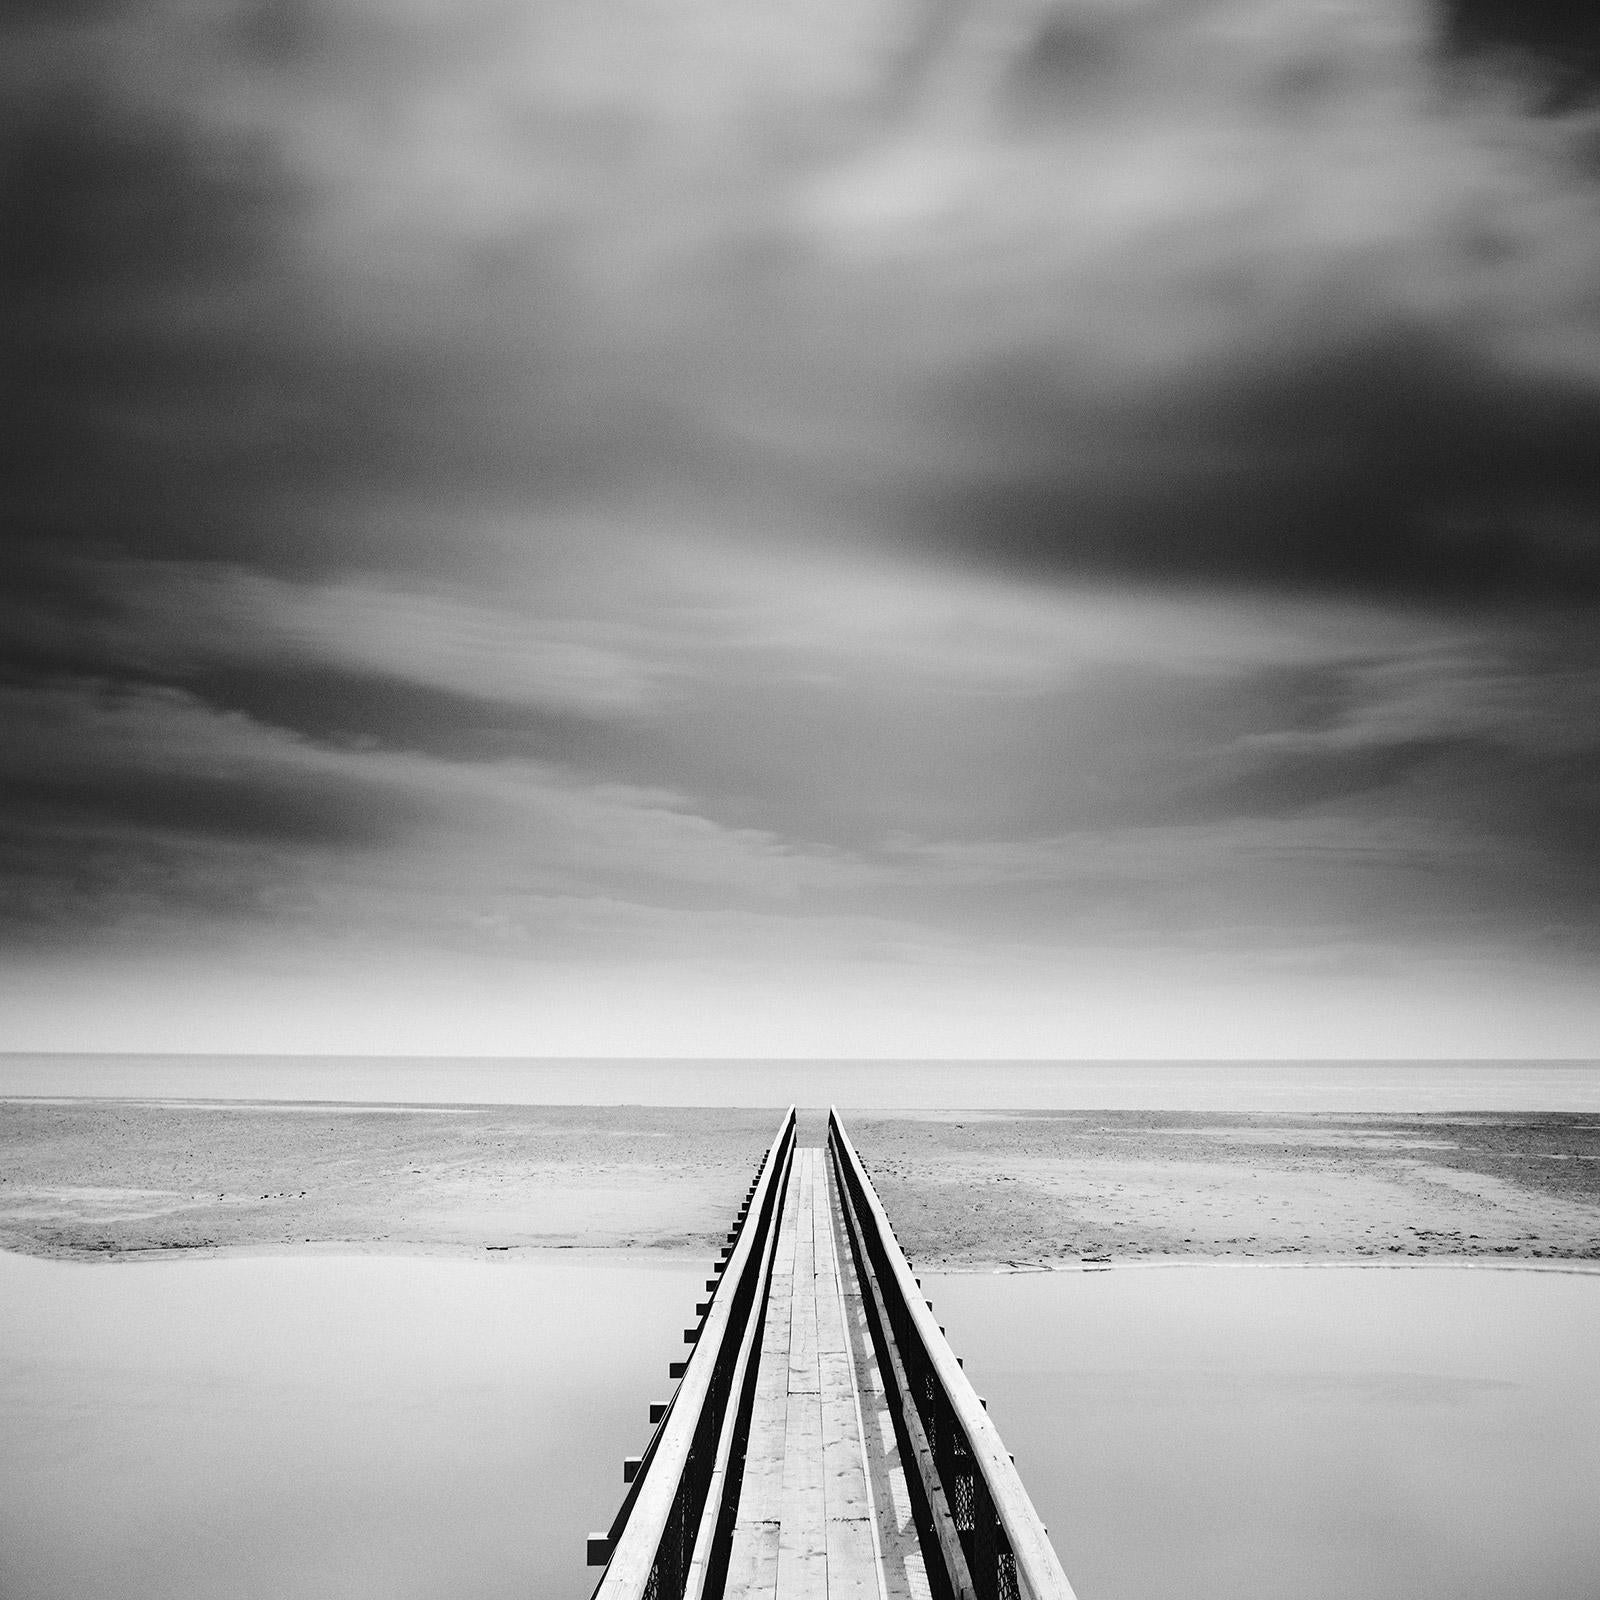 Gerald Berghammer Black and White Photograph – Über die Brücke, Irland, minimalistische Schwarz-Weiß-Landschaftsfotografie